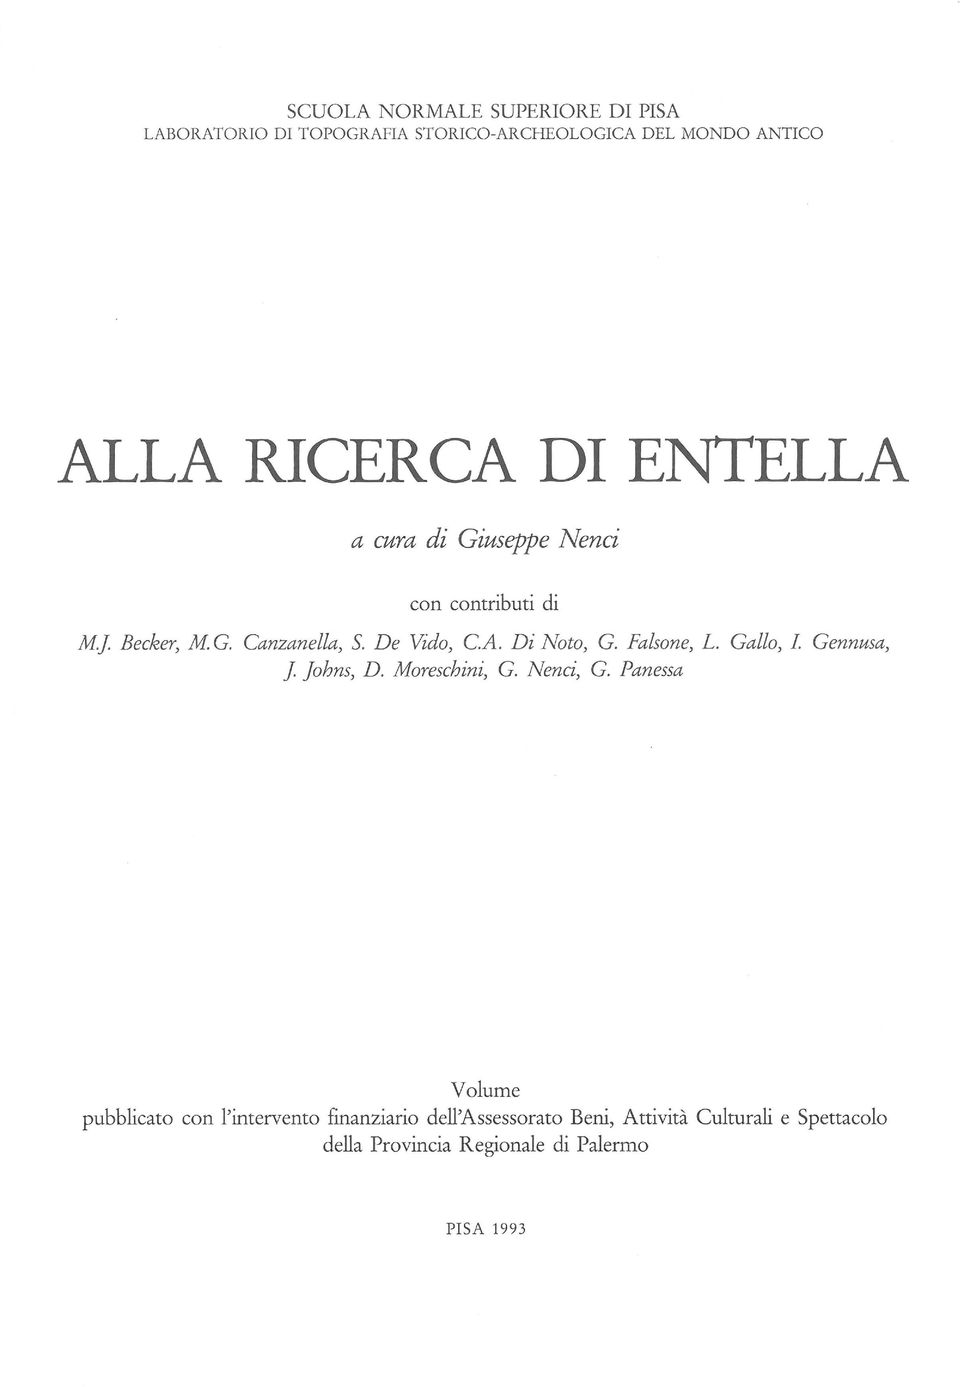 Falsane, L. Gallo, I Gennusa, J Johns, D. Moreschini, G. Nenci, G.